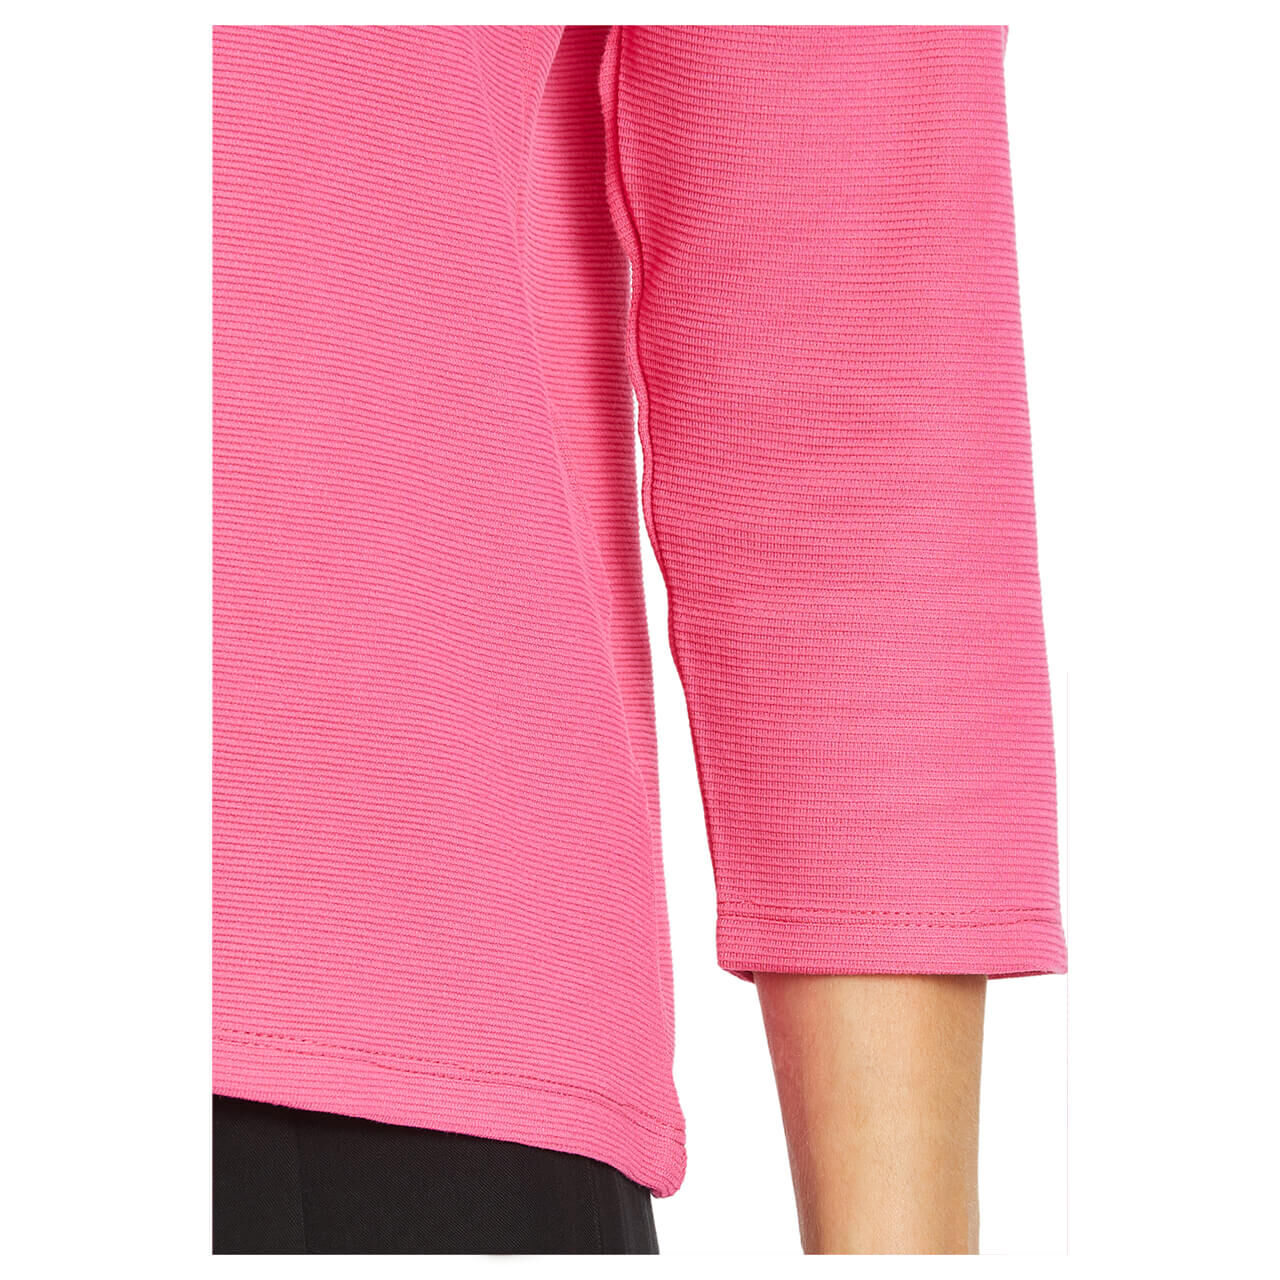 Betty Barclay Damen 3/4 Arm Shirt pink flambé